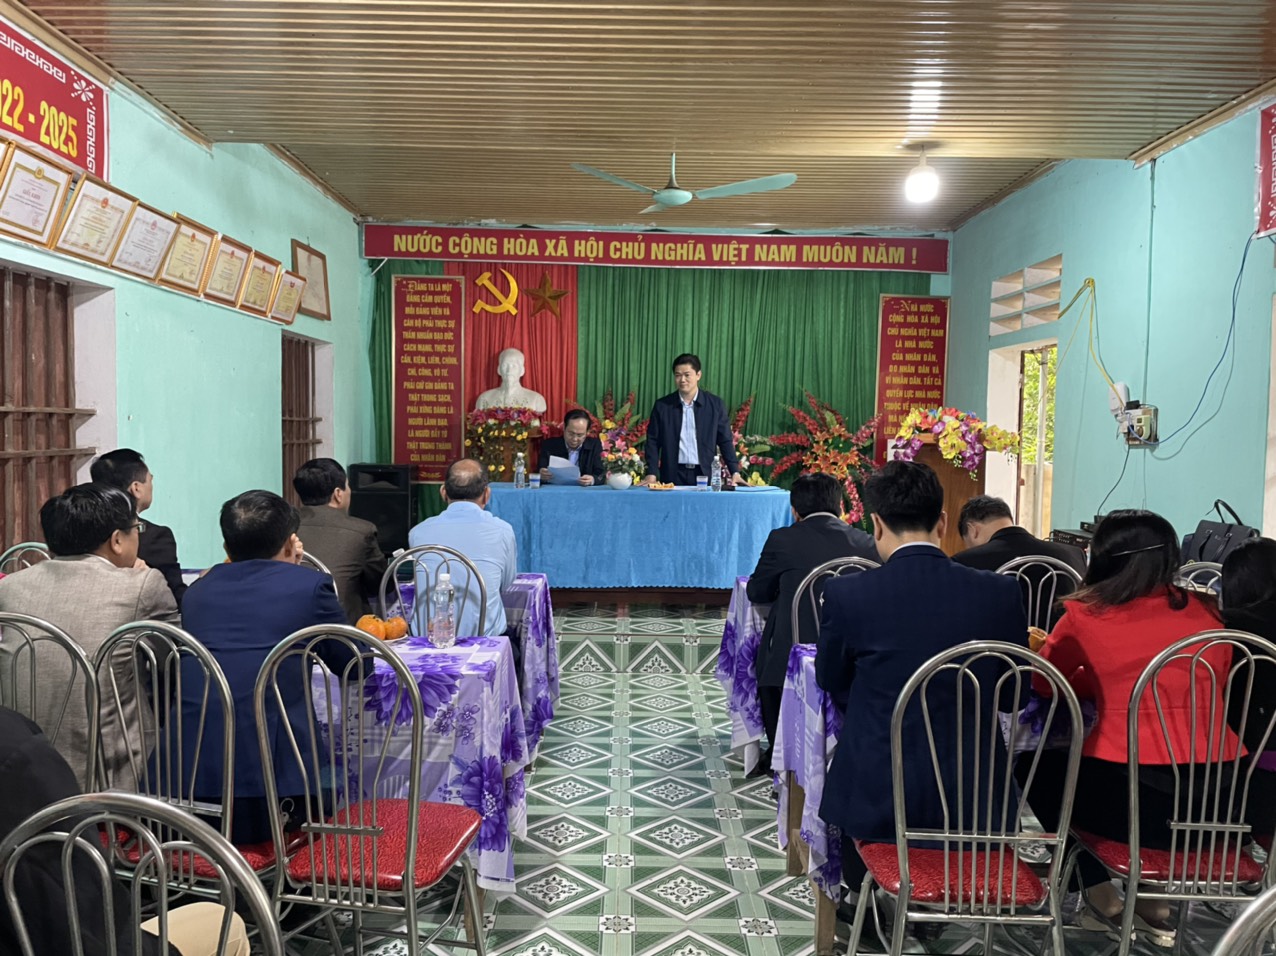 Đồng chí Vũ Mạnh Hà, Trưởng Ban Tuyên giáo Tỉnh ủy làm việc với chi ủy chi bộ thôn Tự Lập, thị trấn Vĩnh Tuy